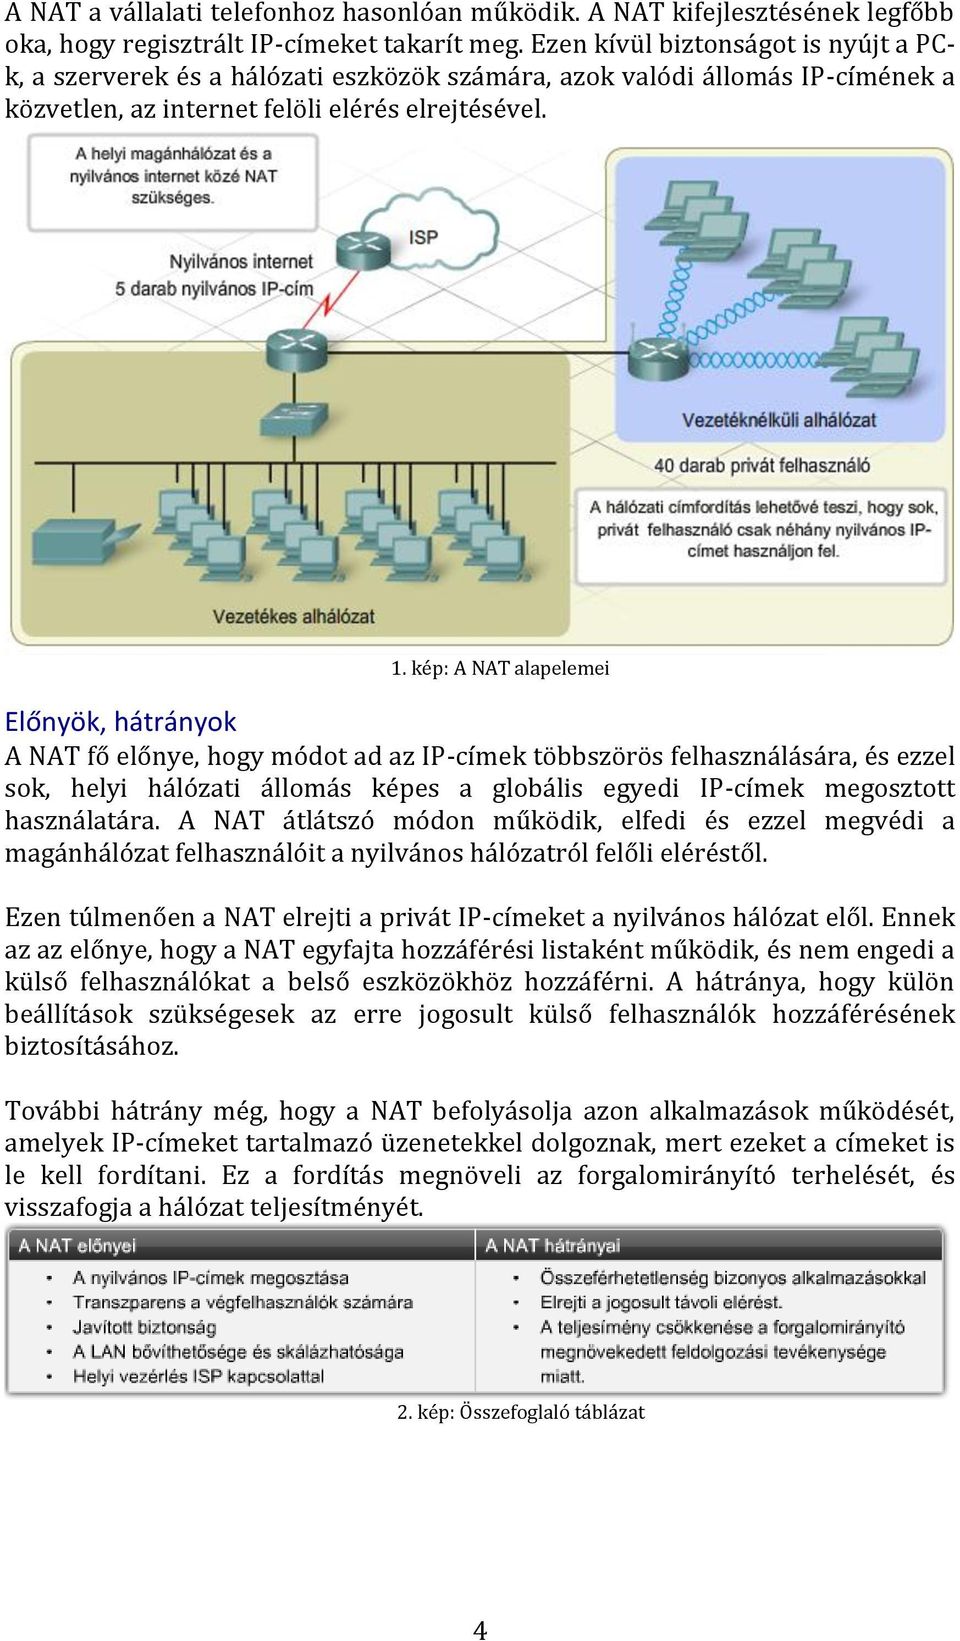 kép: A NAT alapelemei Előnyök, hátrányok A NAT fő előnye, hogy módot ad az IP-címek többszörös felhasználására, és ezzel sok, helyi hálózati állomás képes a globális egyedi IP-címek megosztott